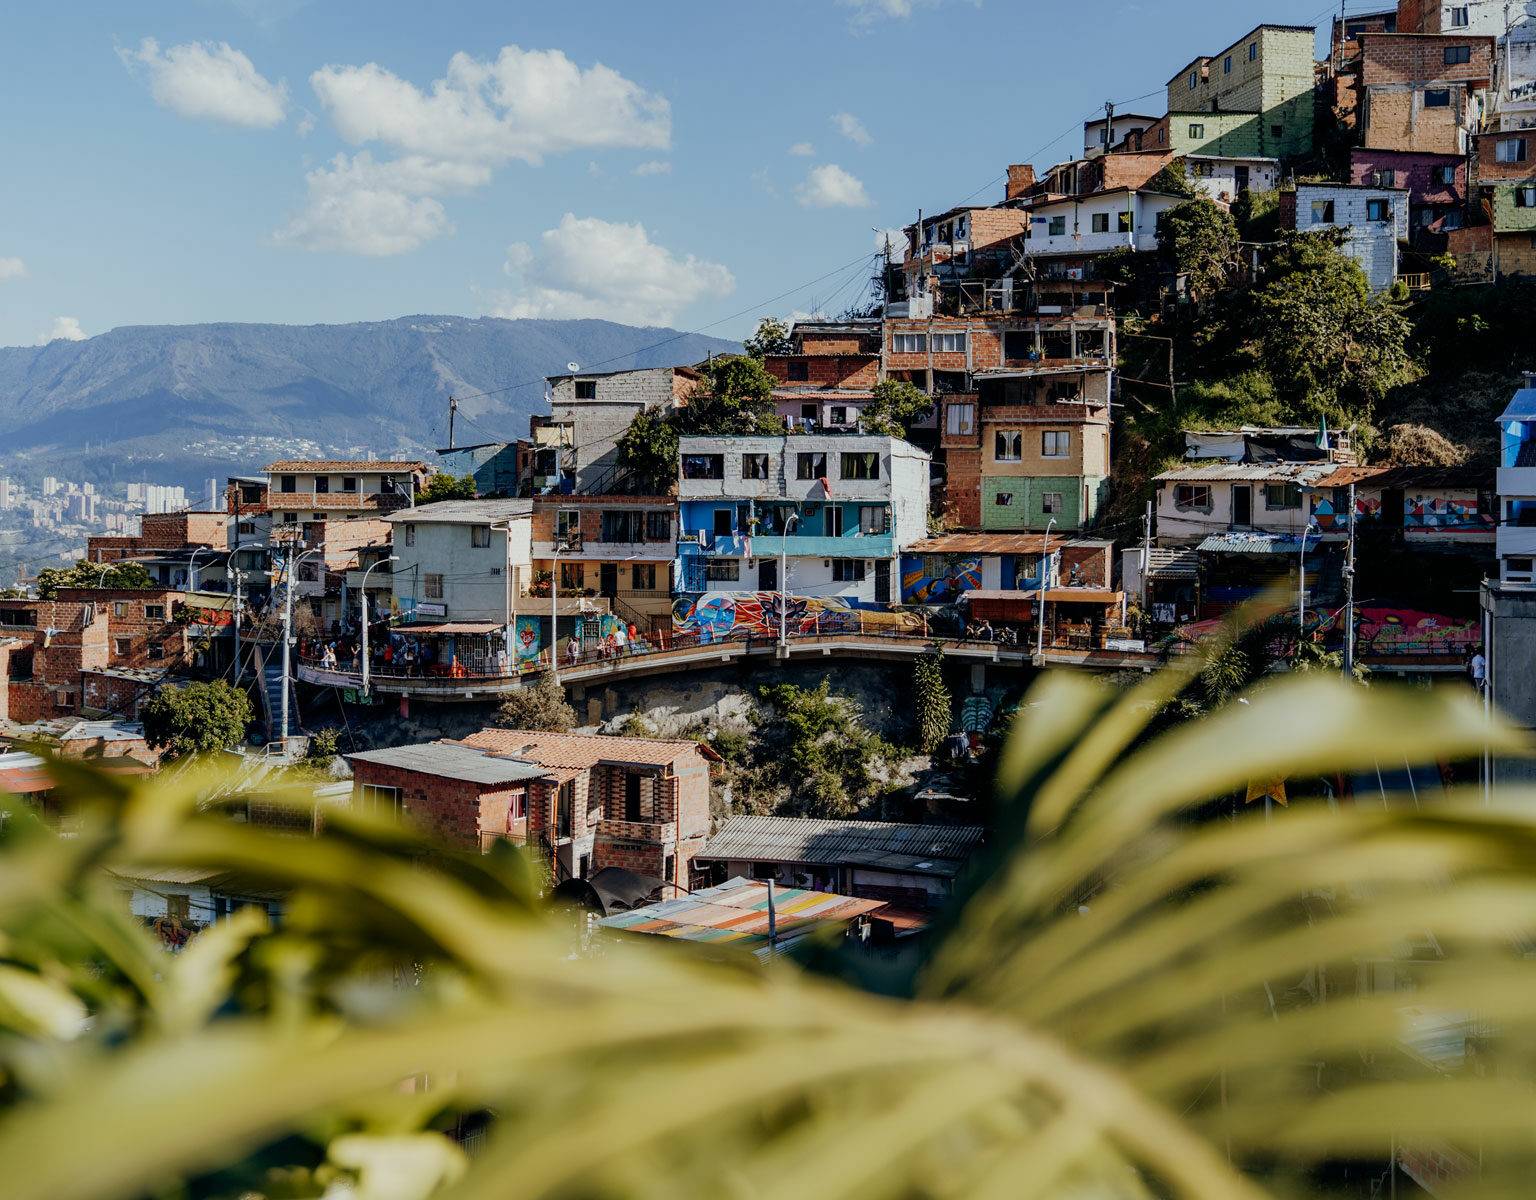 Durch Palmenblätter hindurch fällt der Ausblick auf die Comuna13, einen einst sehr berüchtigten Stadtteil von Medellin in Kolumbien.